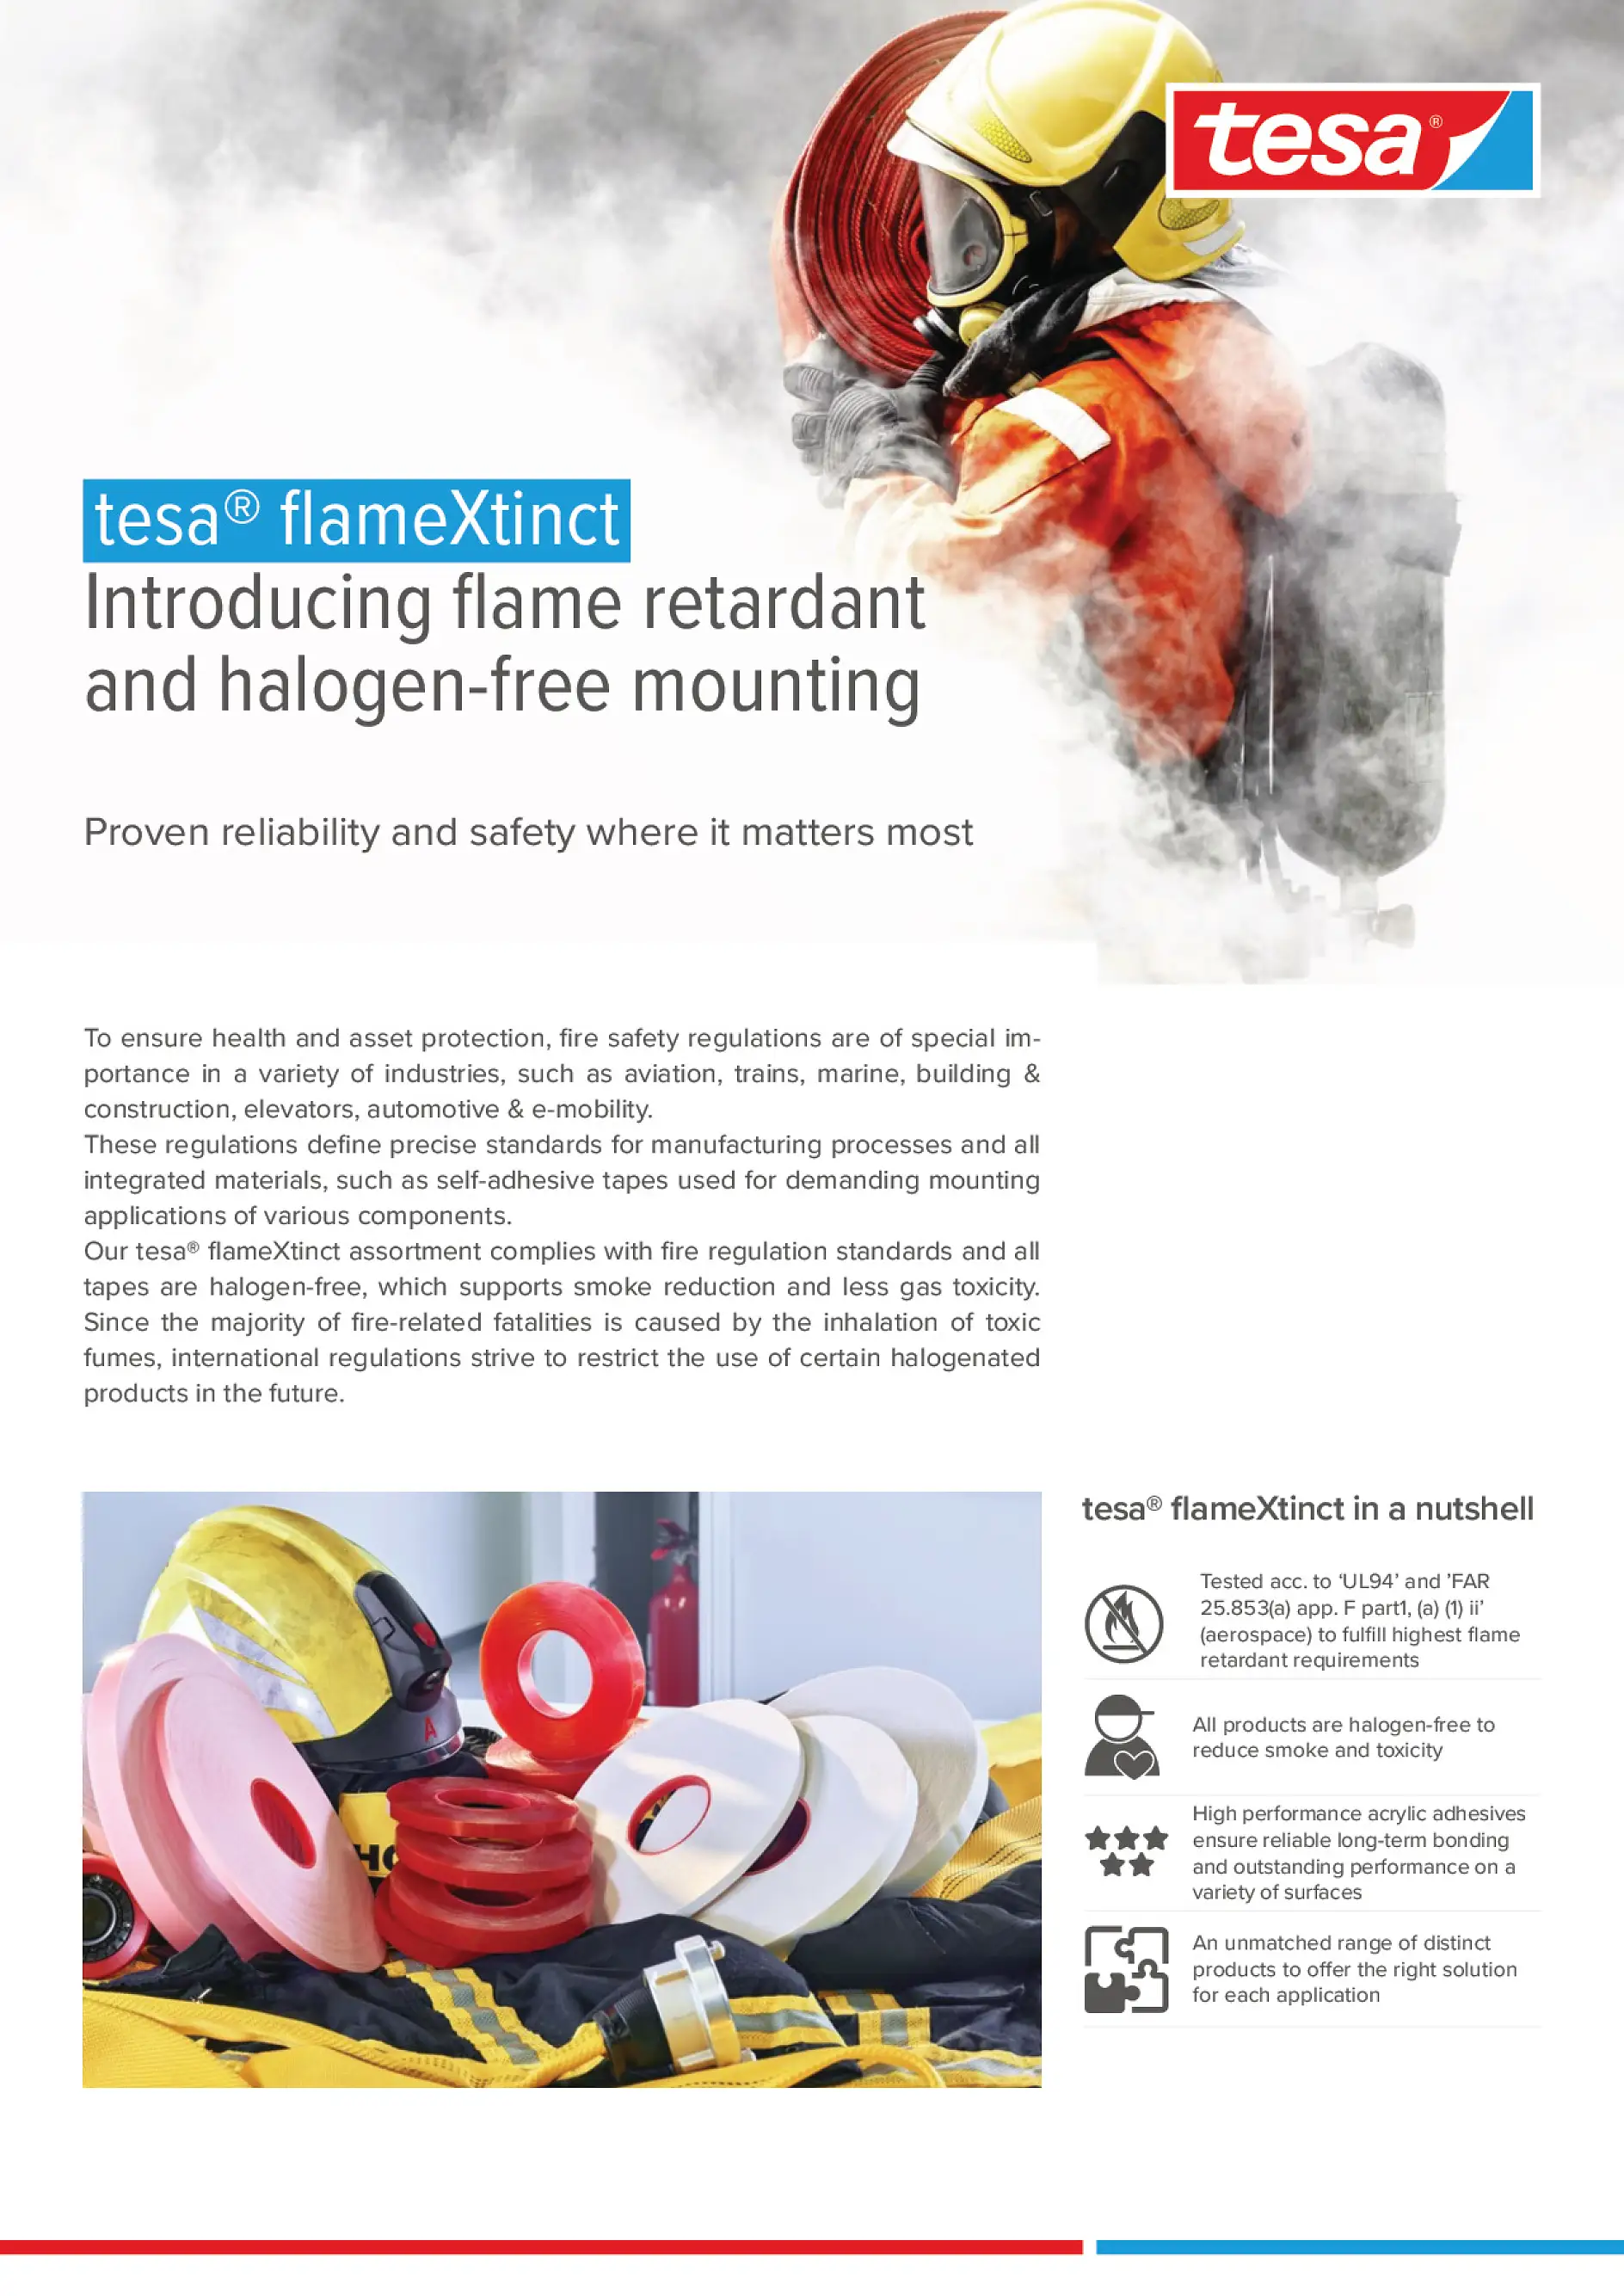 tesa® flameXtinct assortment flyer